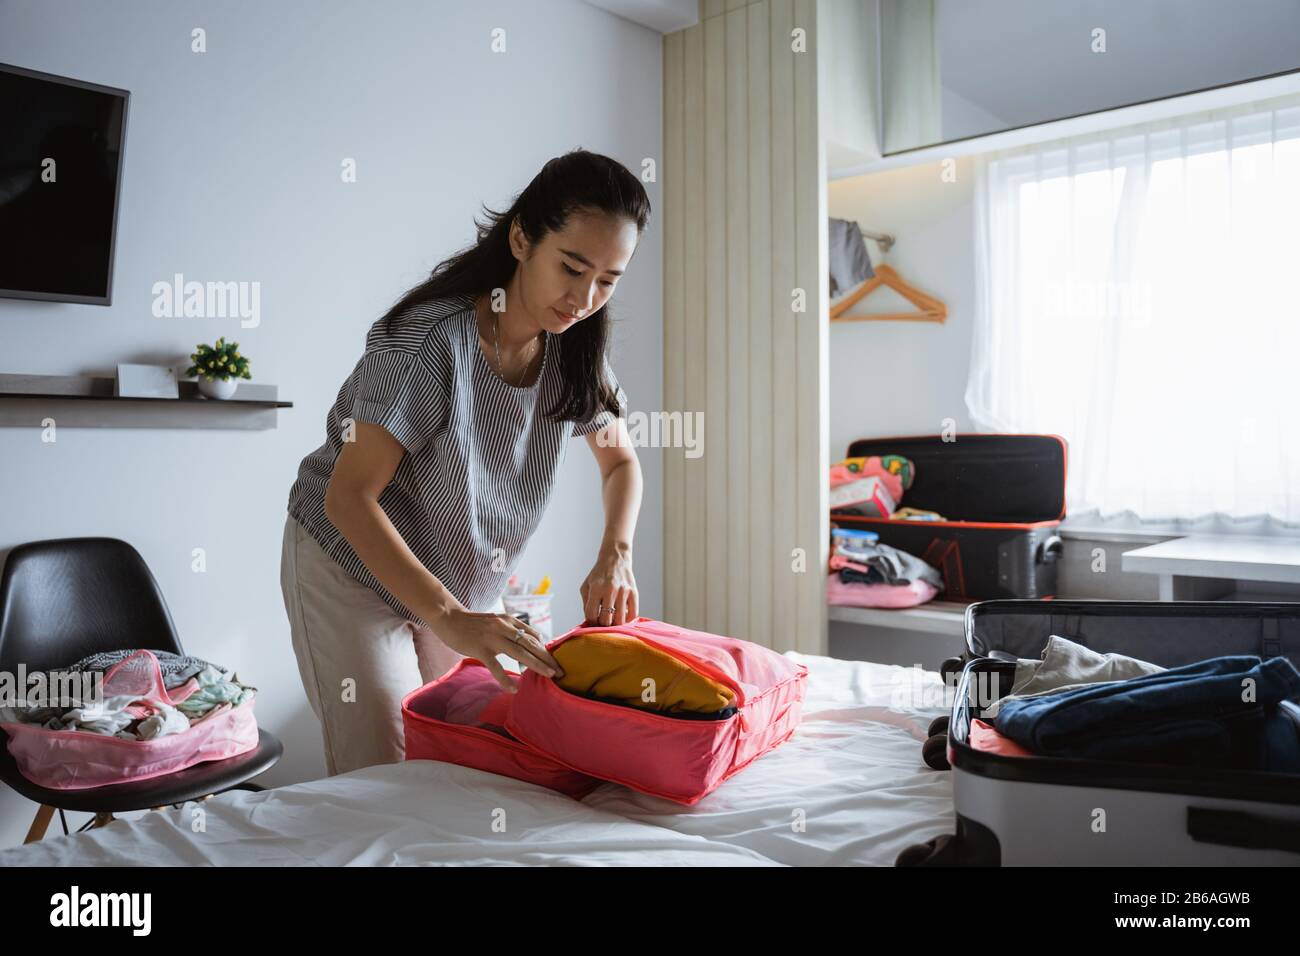 La mère asiatique prépare des vêtements et des sacs à prendre en vacances Banque D'Images